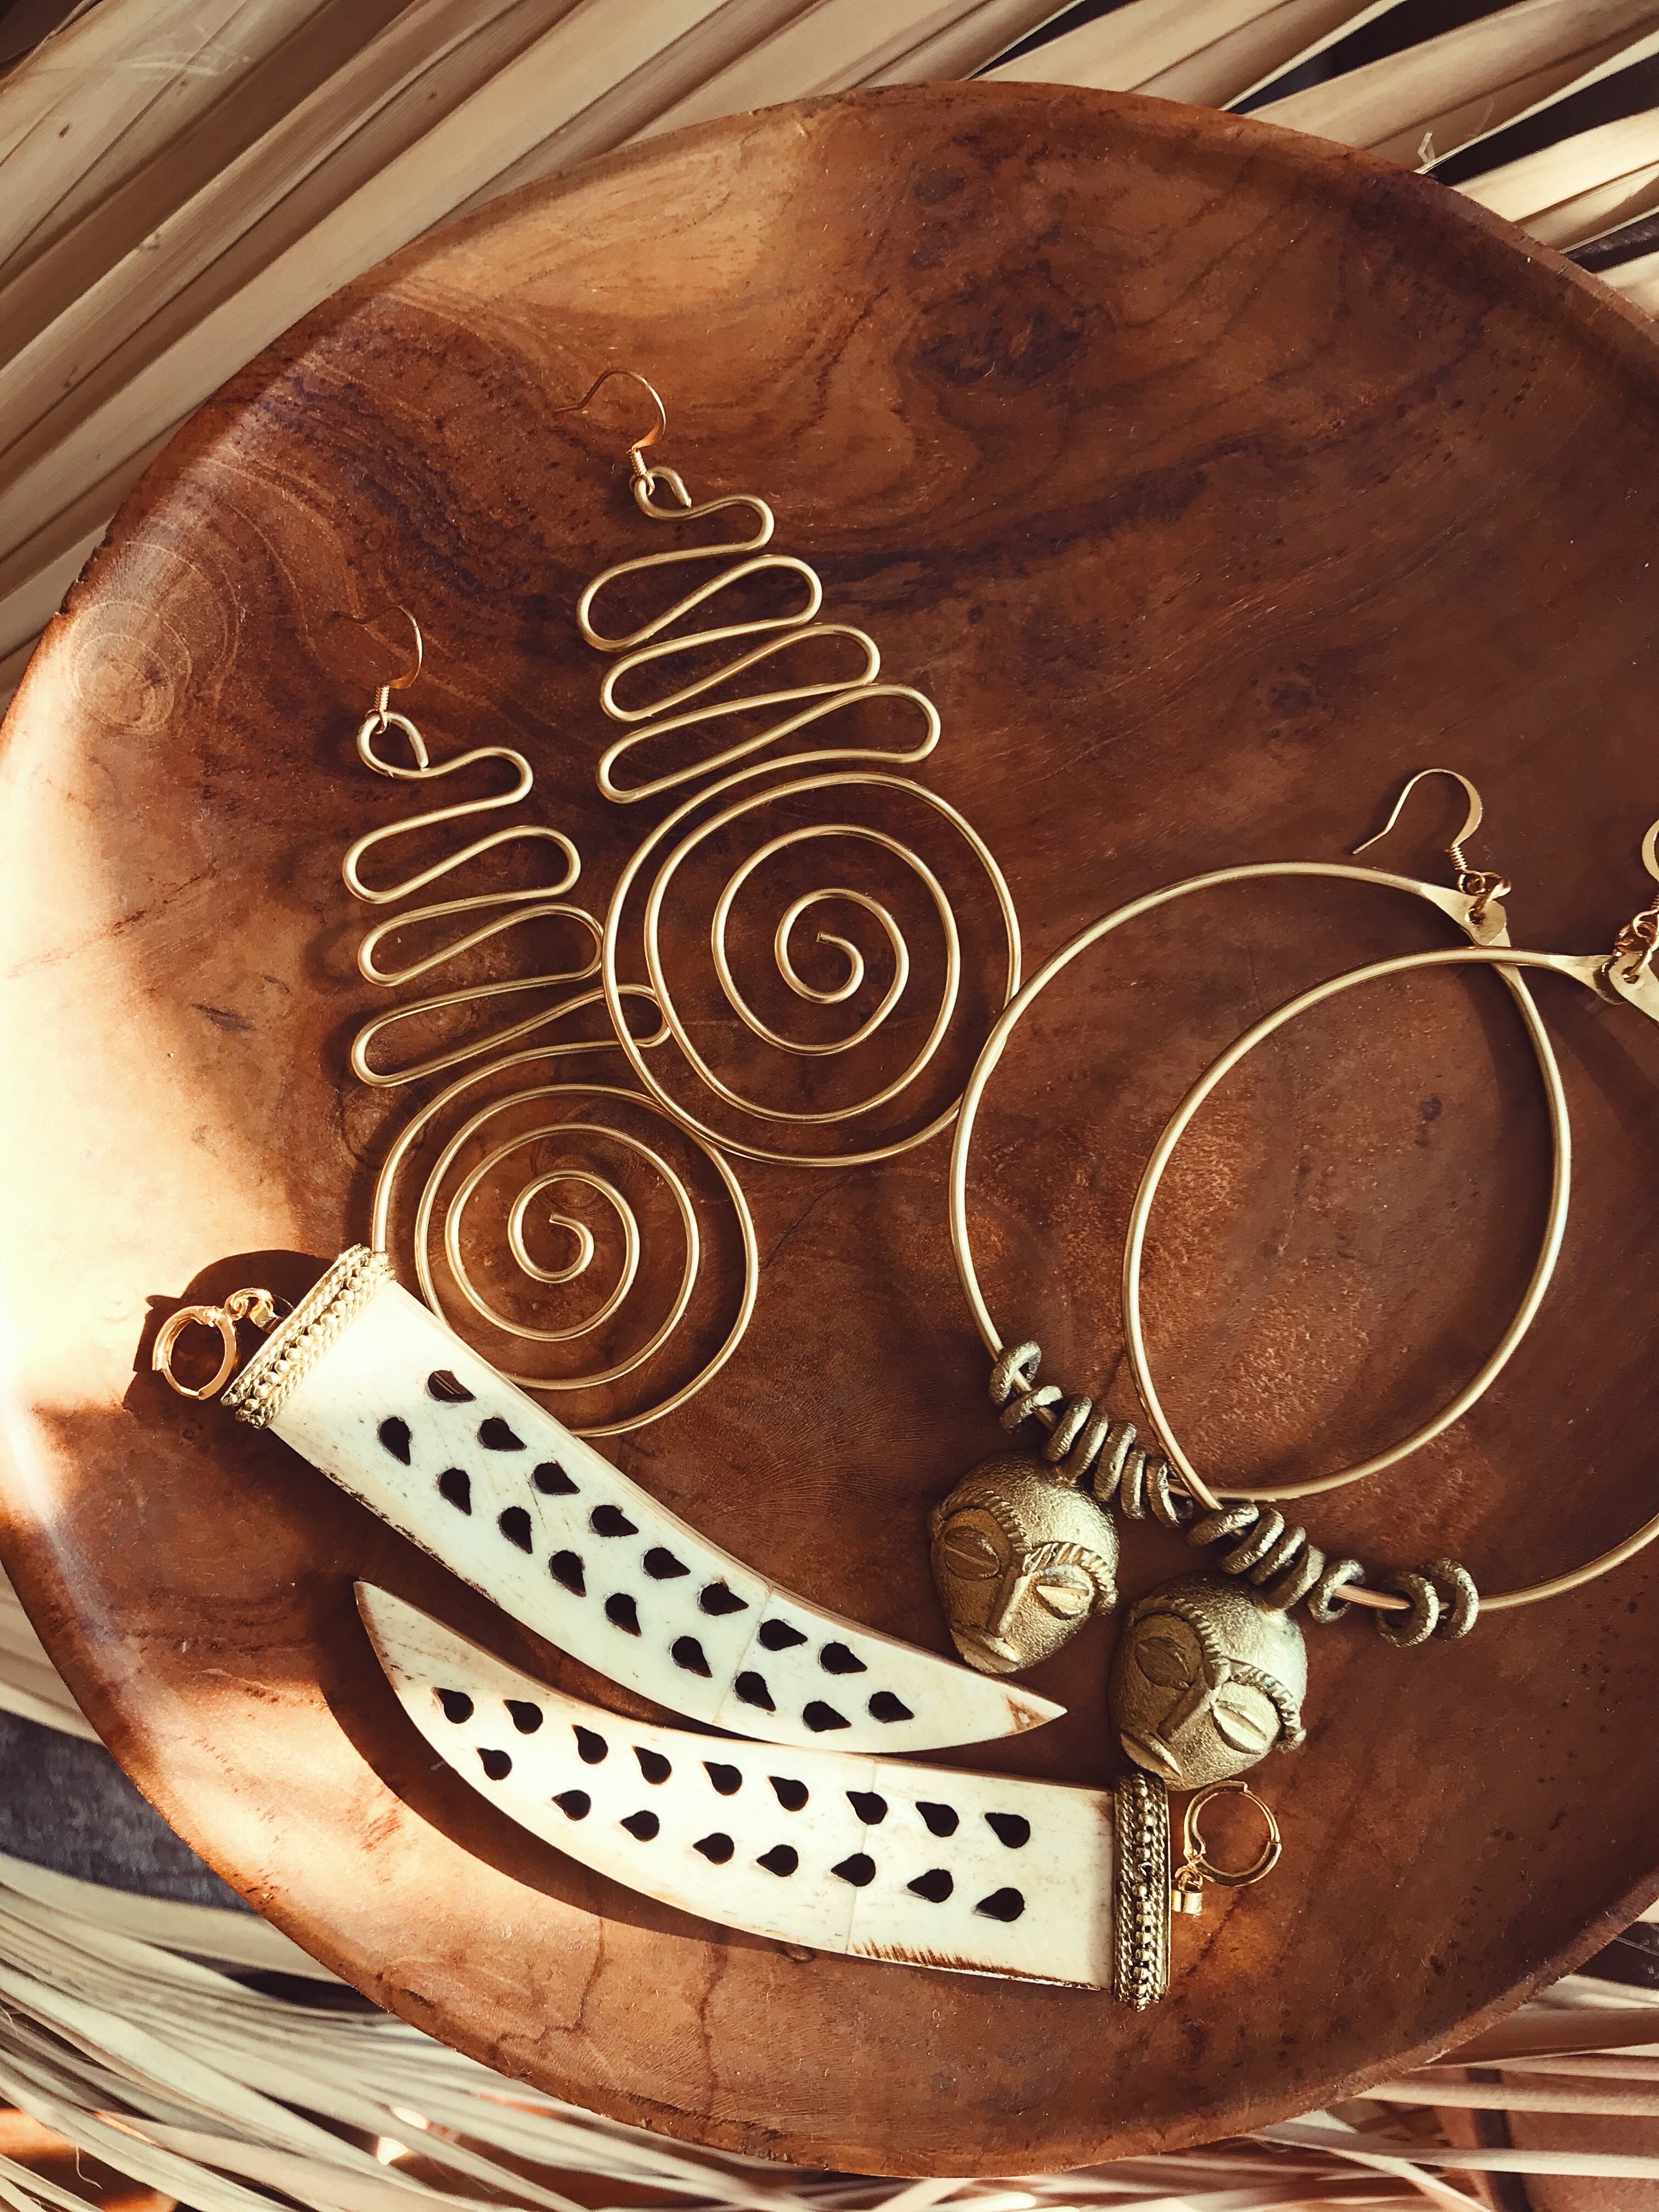 Alaafia Spiral Earrings